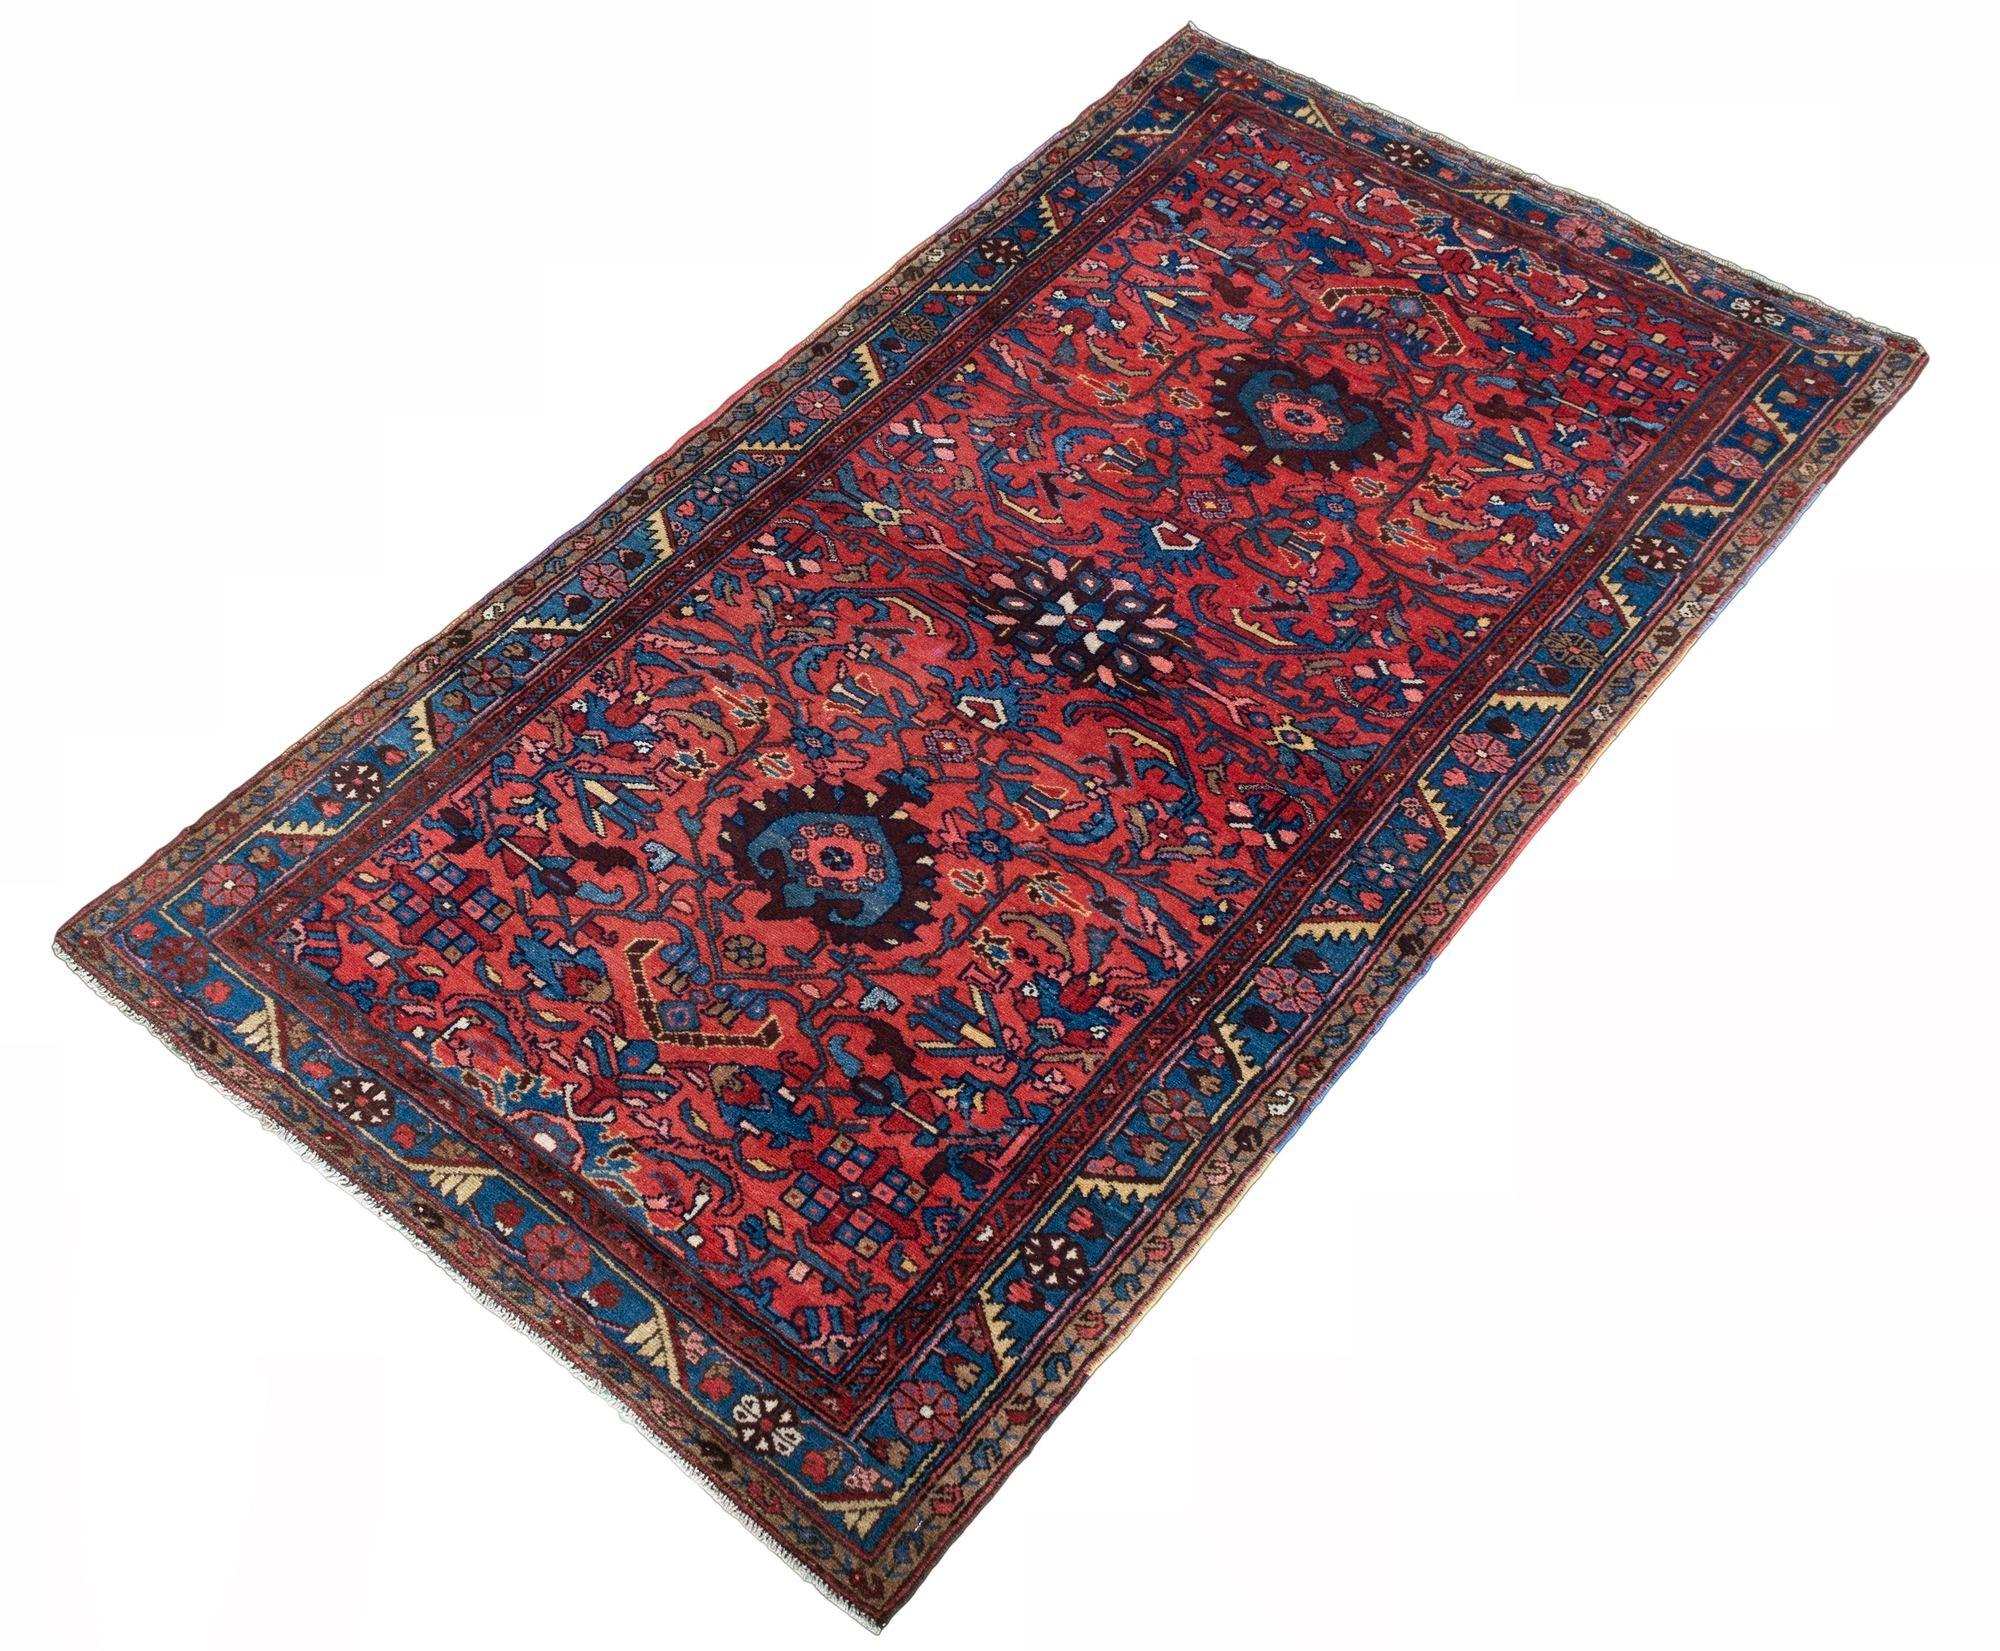 Magnifique tapis ancien de Hamadan, tissé à la main vers 1920, avec un motif floral sur un champ rouge rosé et une bordure indigo. De merveilleuses couleurs secondaires de bleus et d'or et un tapis ancien très décoratif.
Taille : 1,96m x 1,05m (6ft